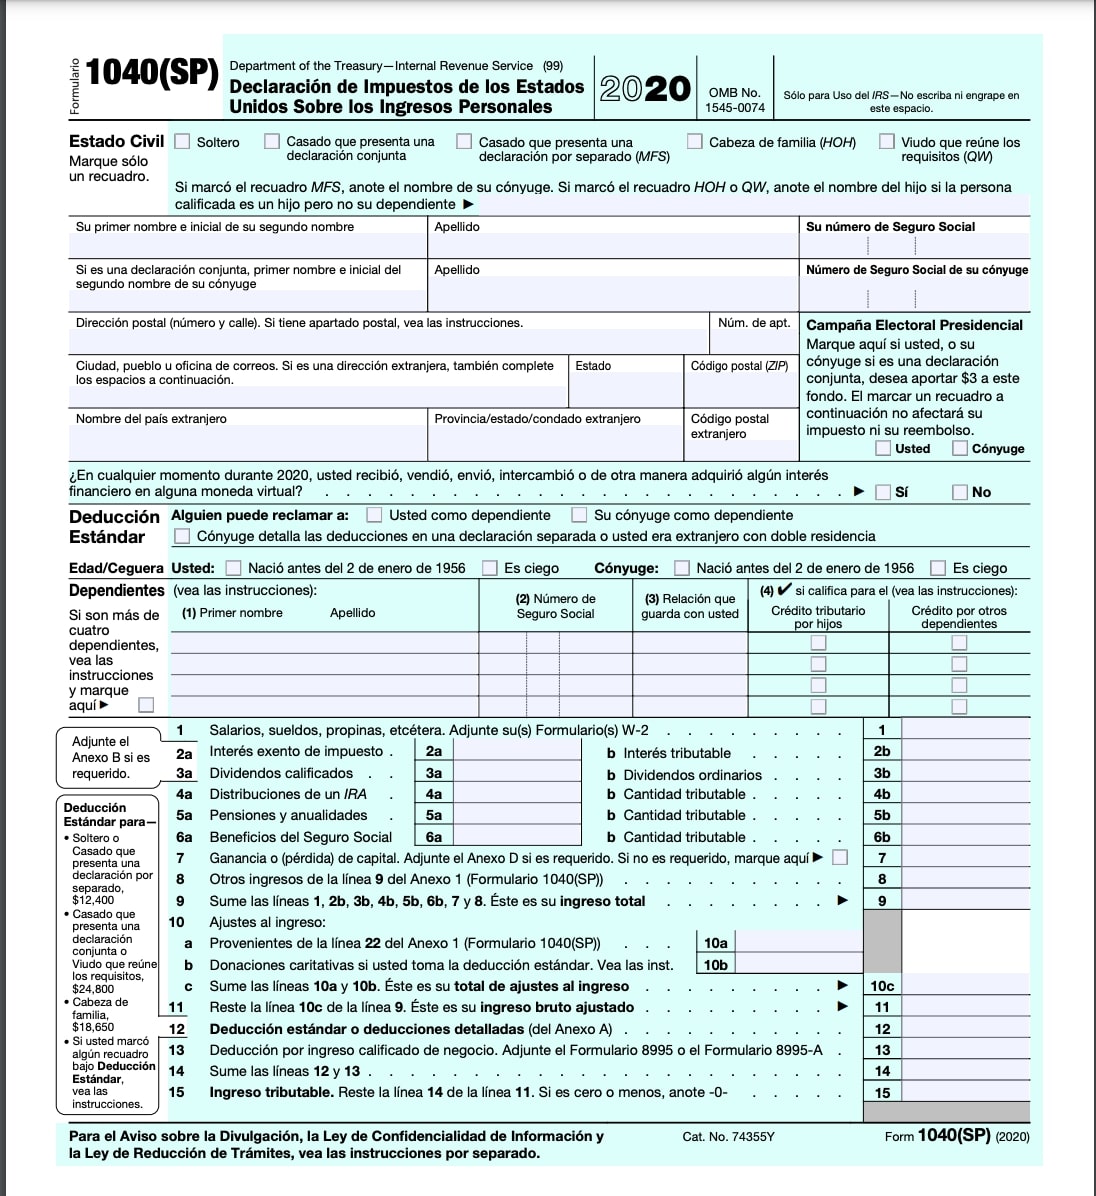 Por primera vez, el IRS lanza una versión en español del formulario